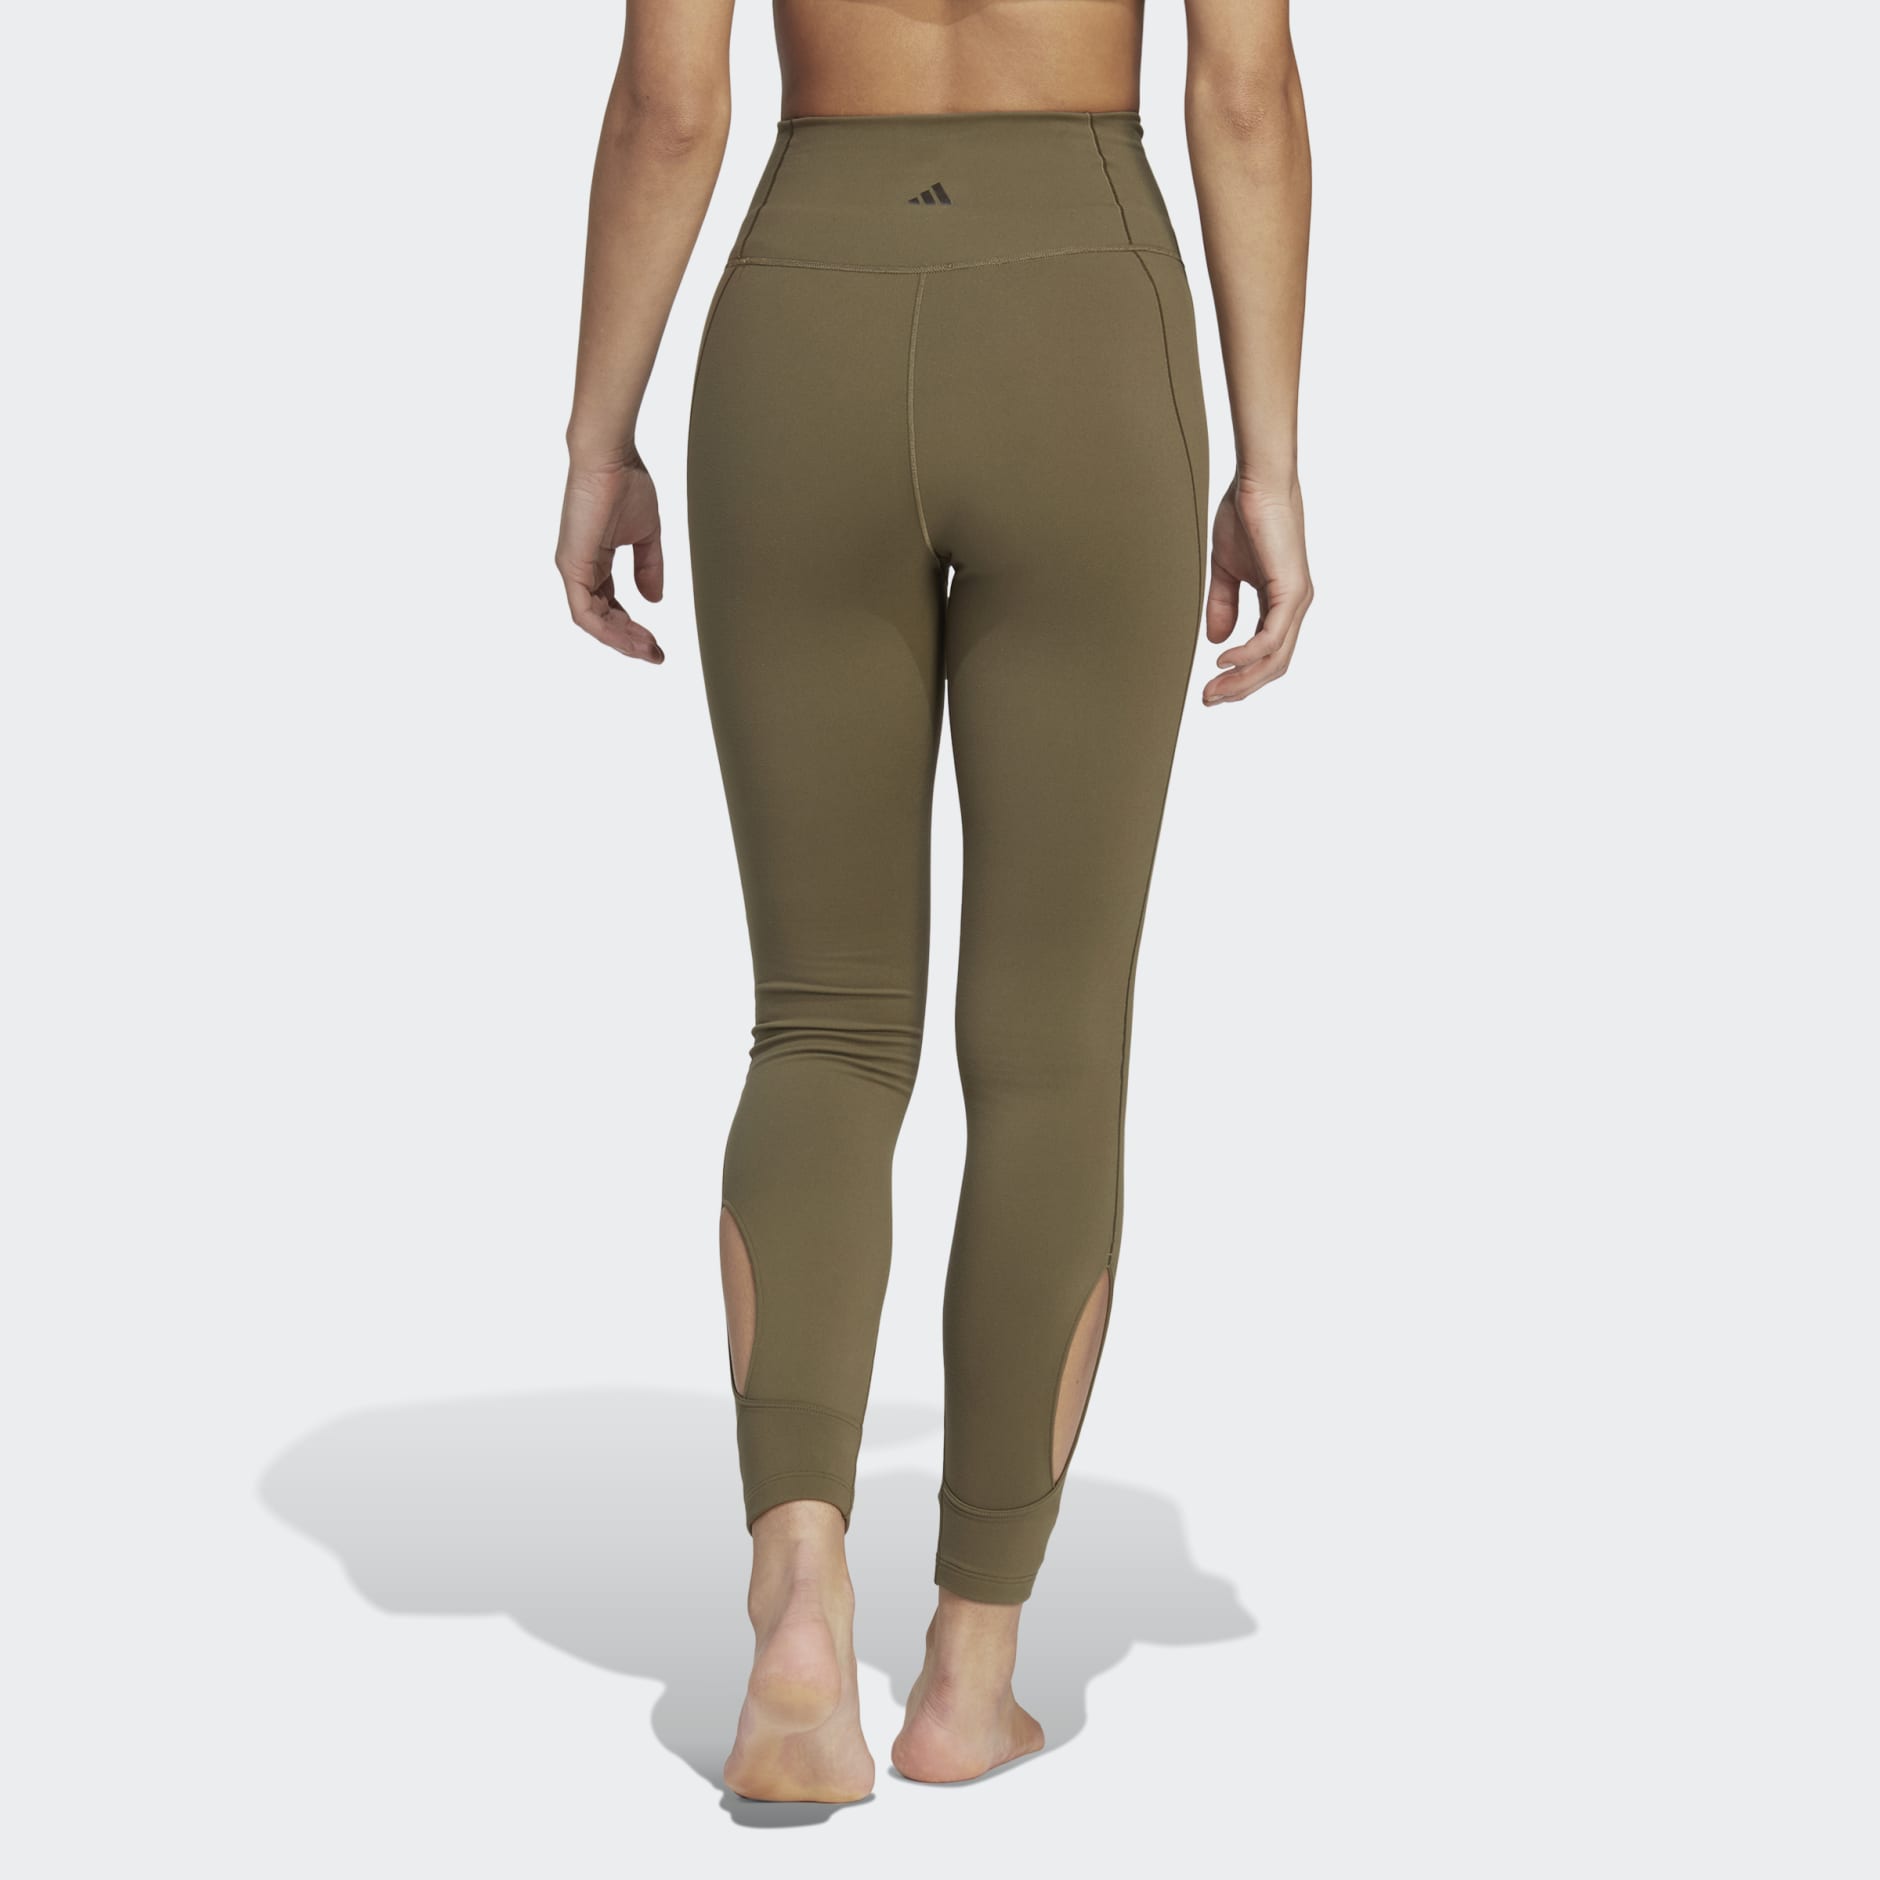  OASISWORKS Women's High Waisted Leggings, ⅞ Length 25 Inch  Inseam Yoga Pants